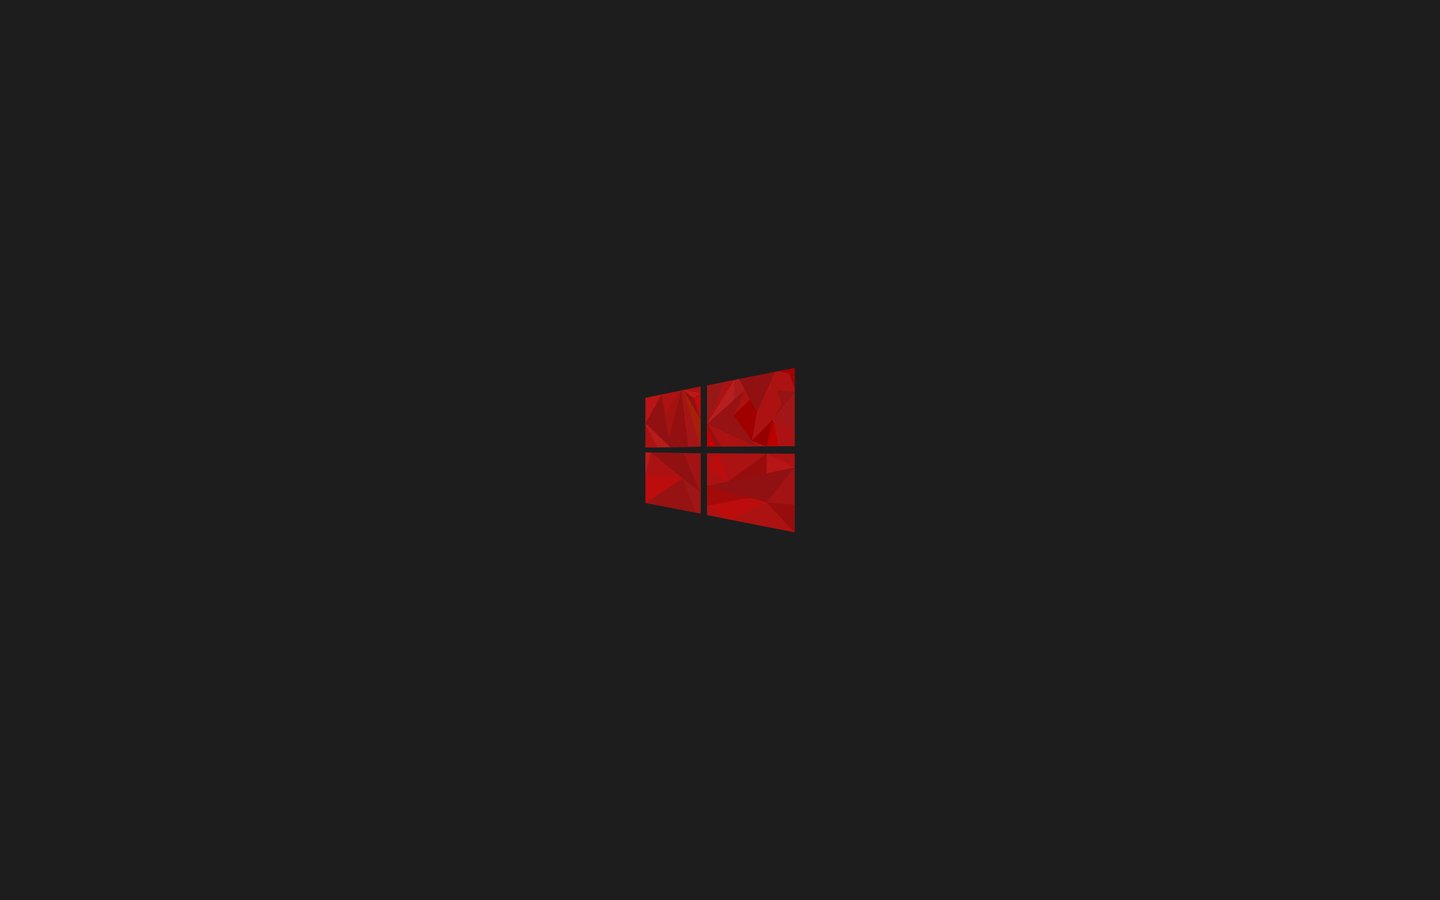 Đừng bỏ lỡ cơ hội sở hữu một hình nền đơn giản đẹp cho Windows 10 với độ phân giải 1440x900 siêu sắc nét. Bạn sẽ yêu thích màu đỏ rực rỡ và đường nét tinh tế trong hình ảnh này. Tải ngay và trang trí ngay cho desktop của bạn.